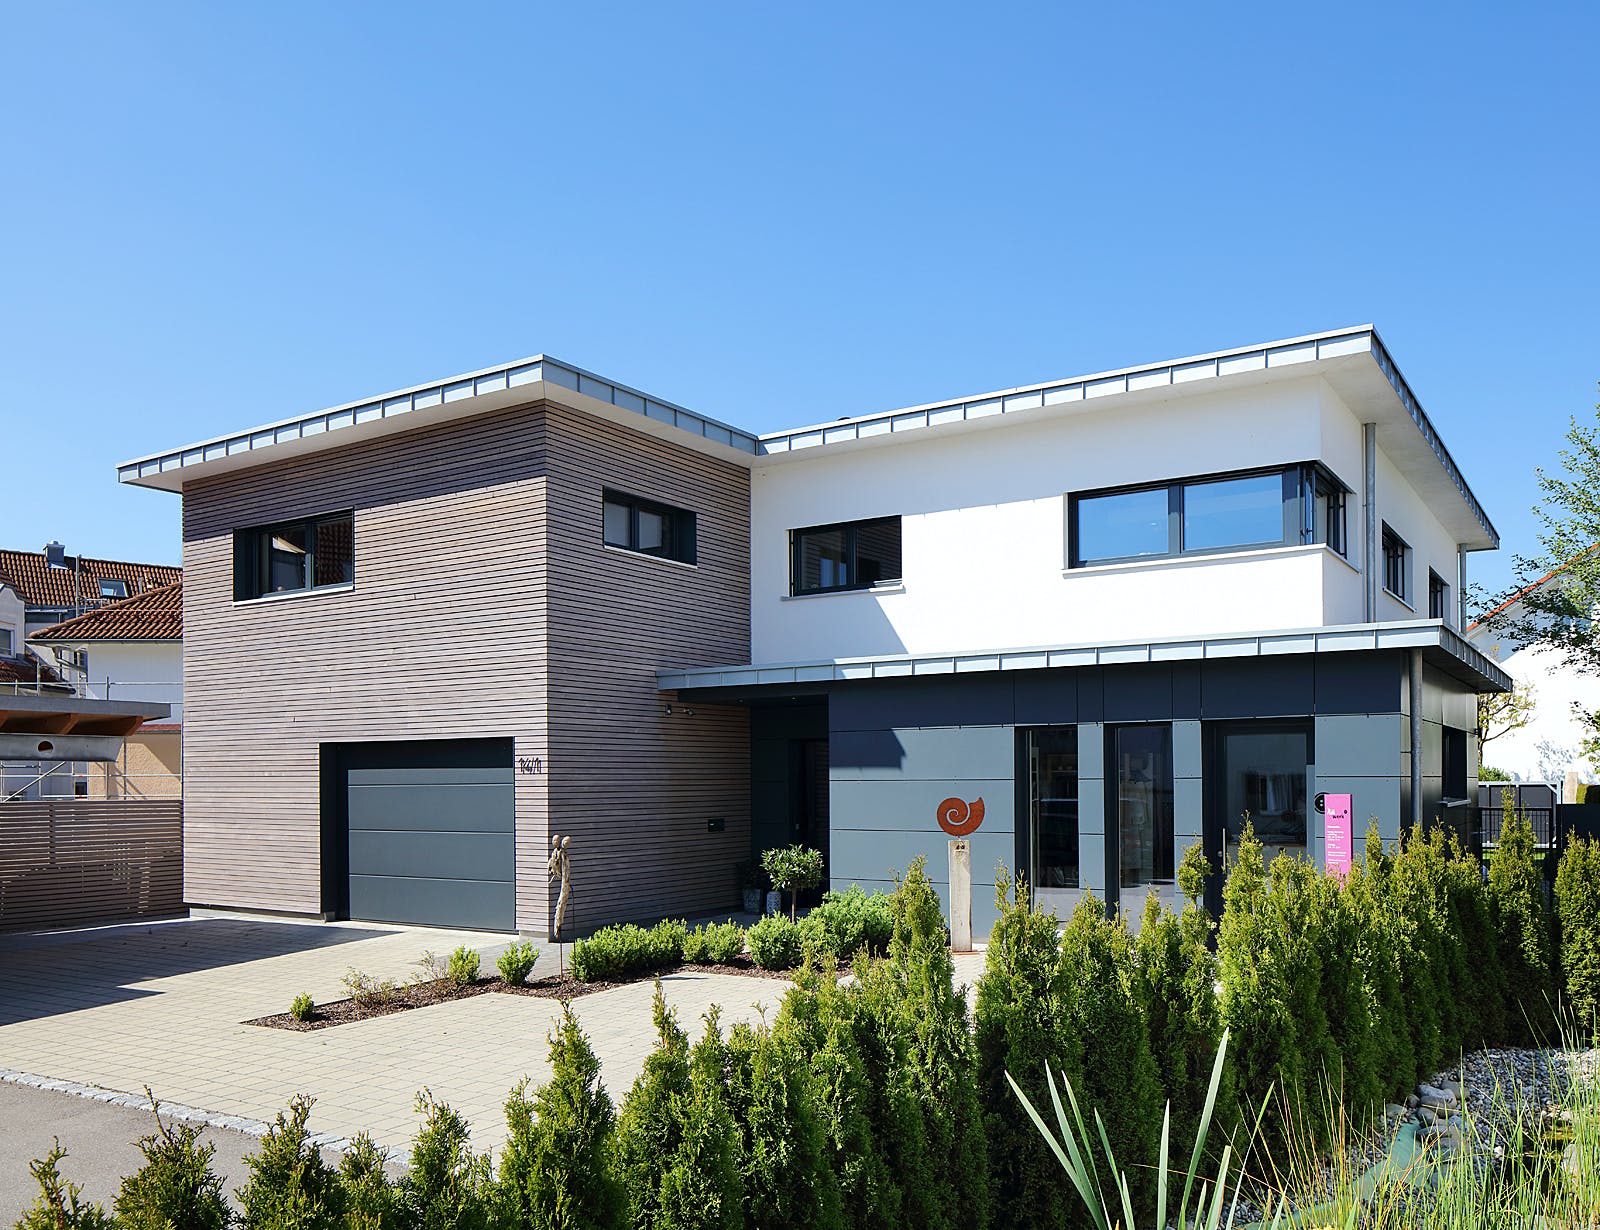 Fertighaus Haus mit Gewerbe WPBW von Weizenegger Schlüsselfertig ab 530000€, Cubushaus Außenansicht 2